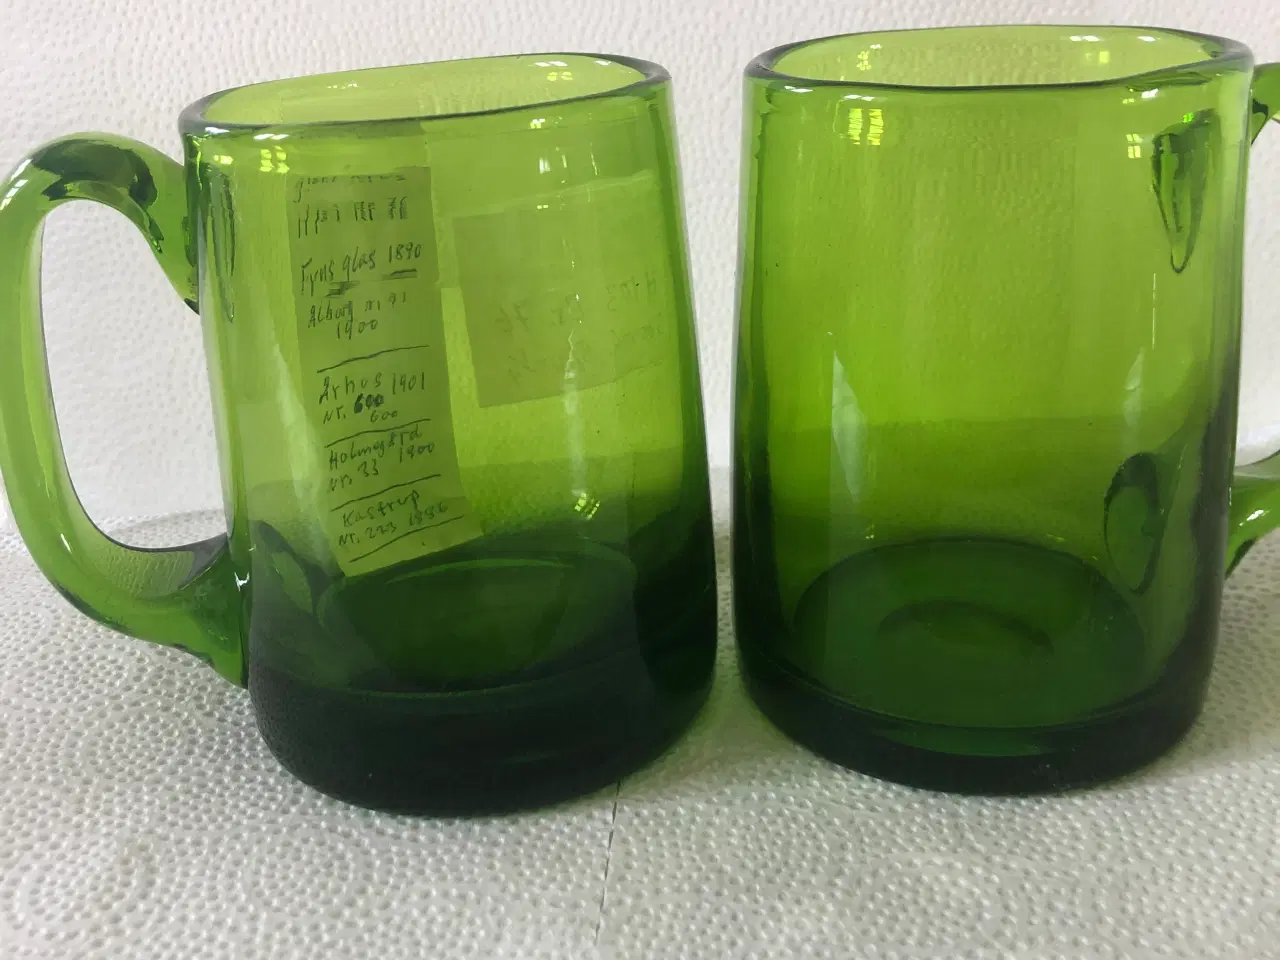 Billede 1 - 2 glas krus fra Fyns glasværk 